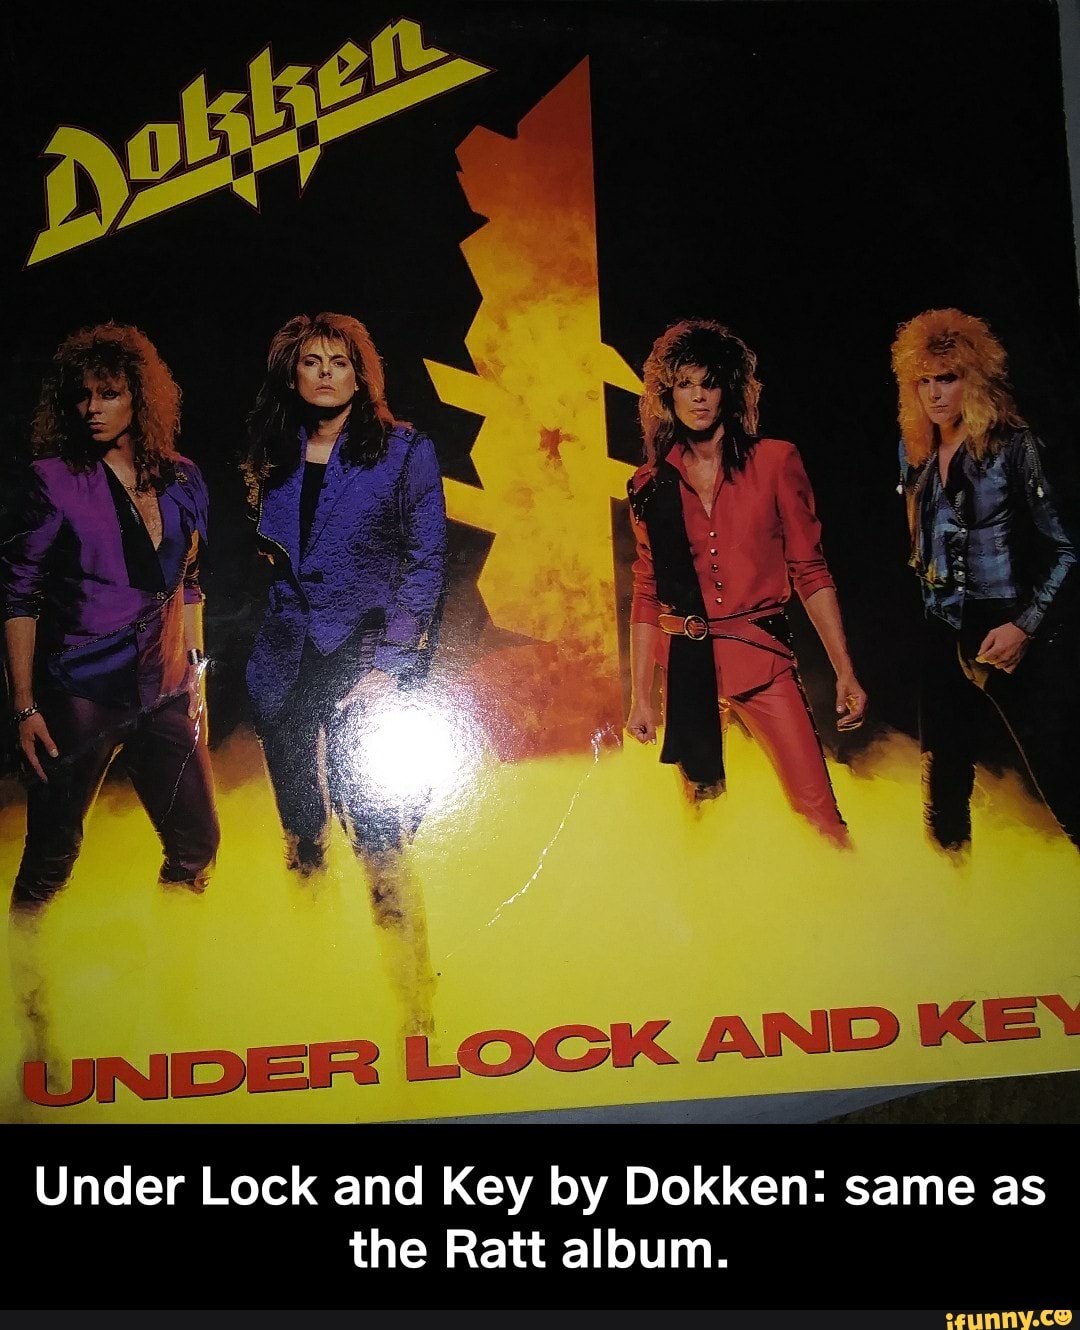 Under Lock and Key - Album by Dokken